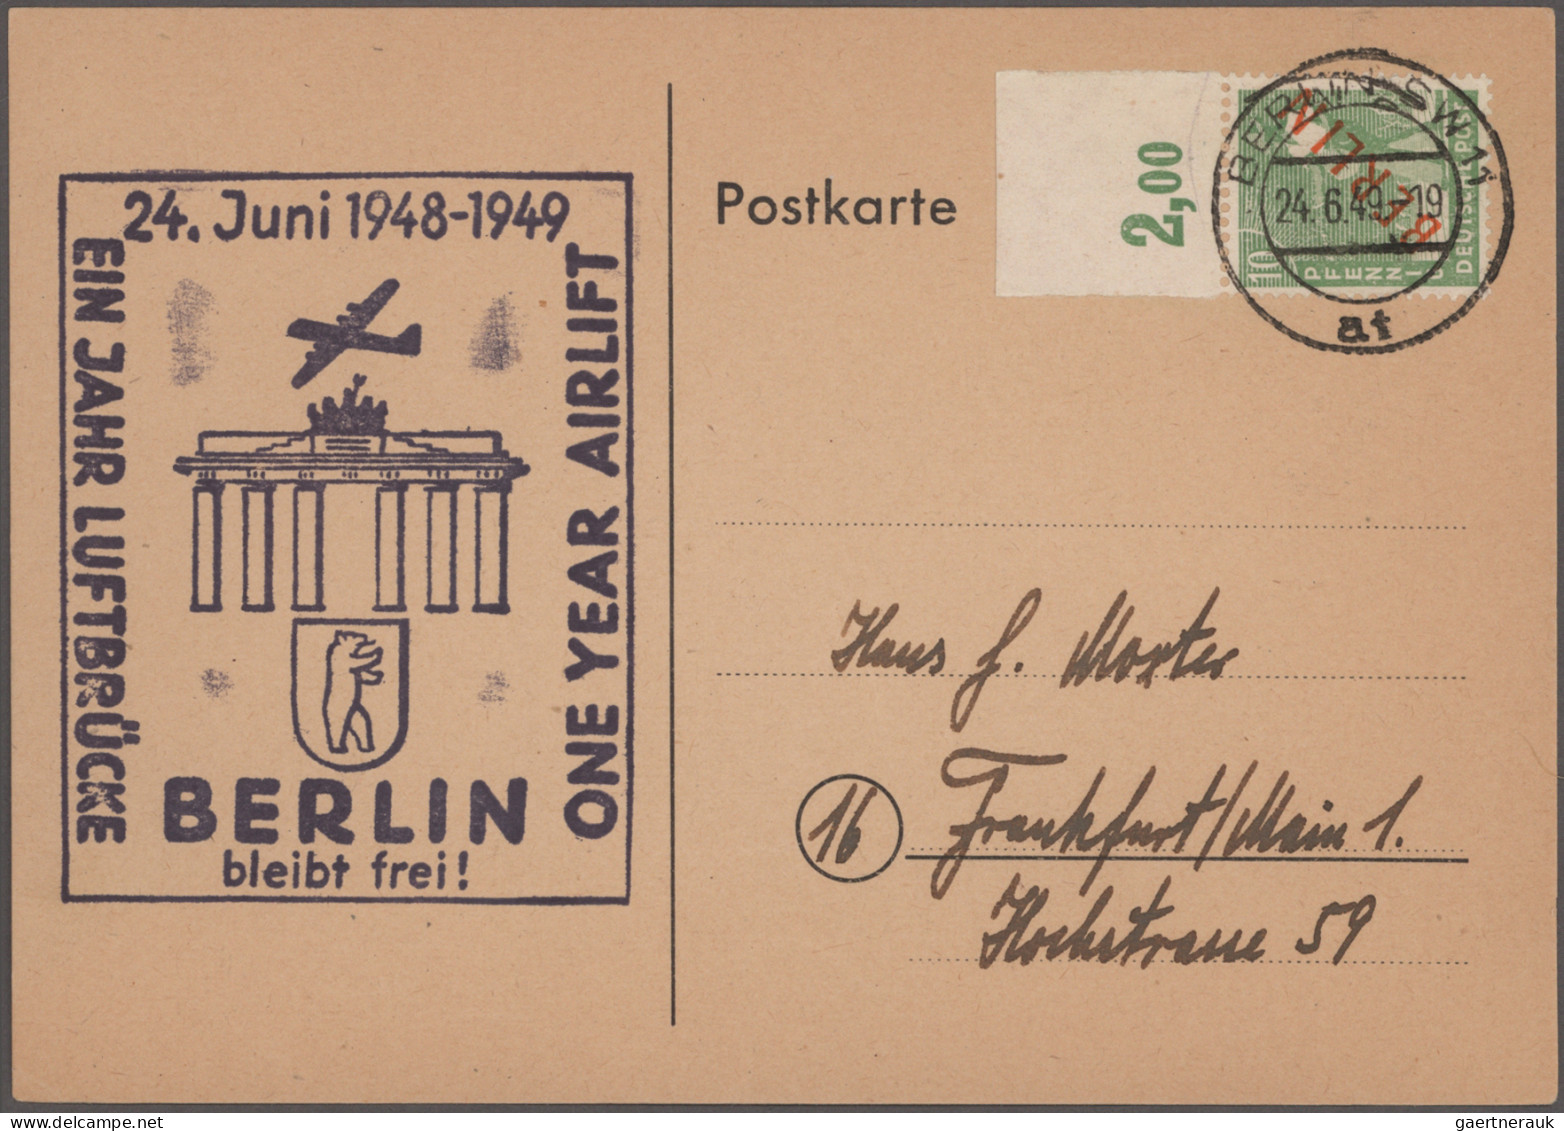 Berlin: 1948/1976, vielseitige Sammlung von ca. 58 Briefen und Karten mit besond